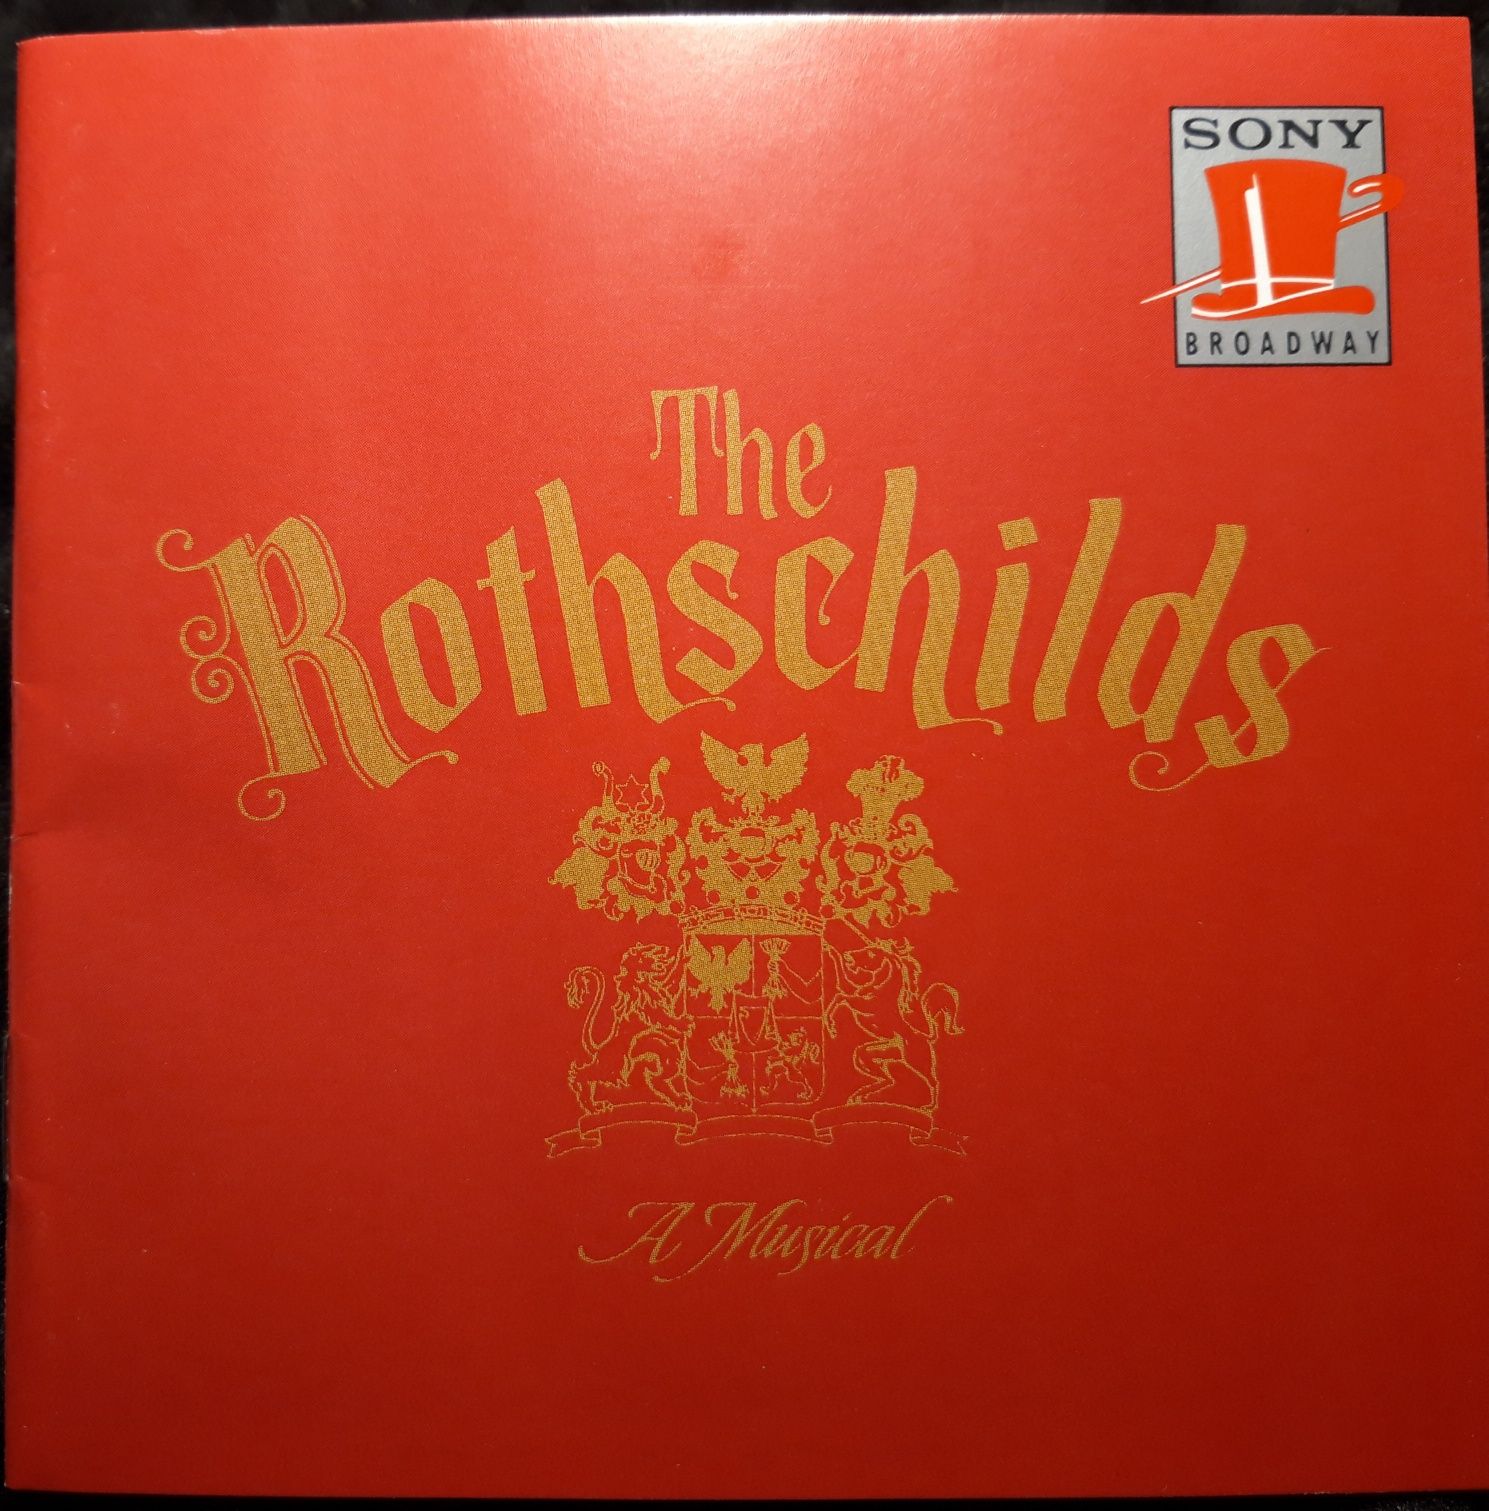 Original Broadway Cast – The Rothschilds: A Musical (CD, 1992)